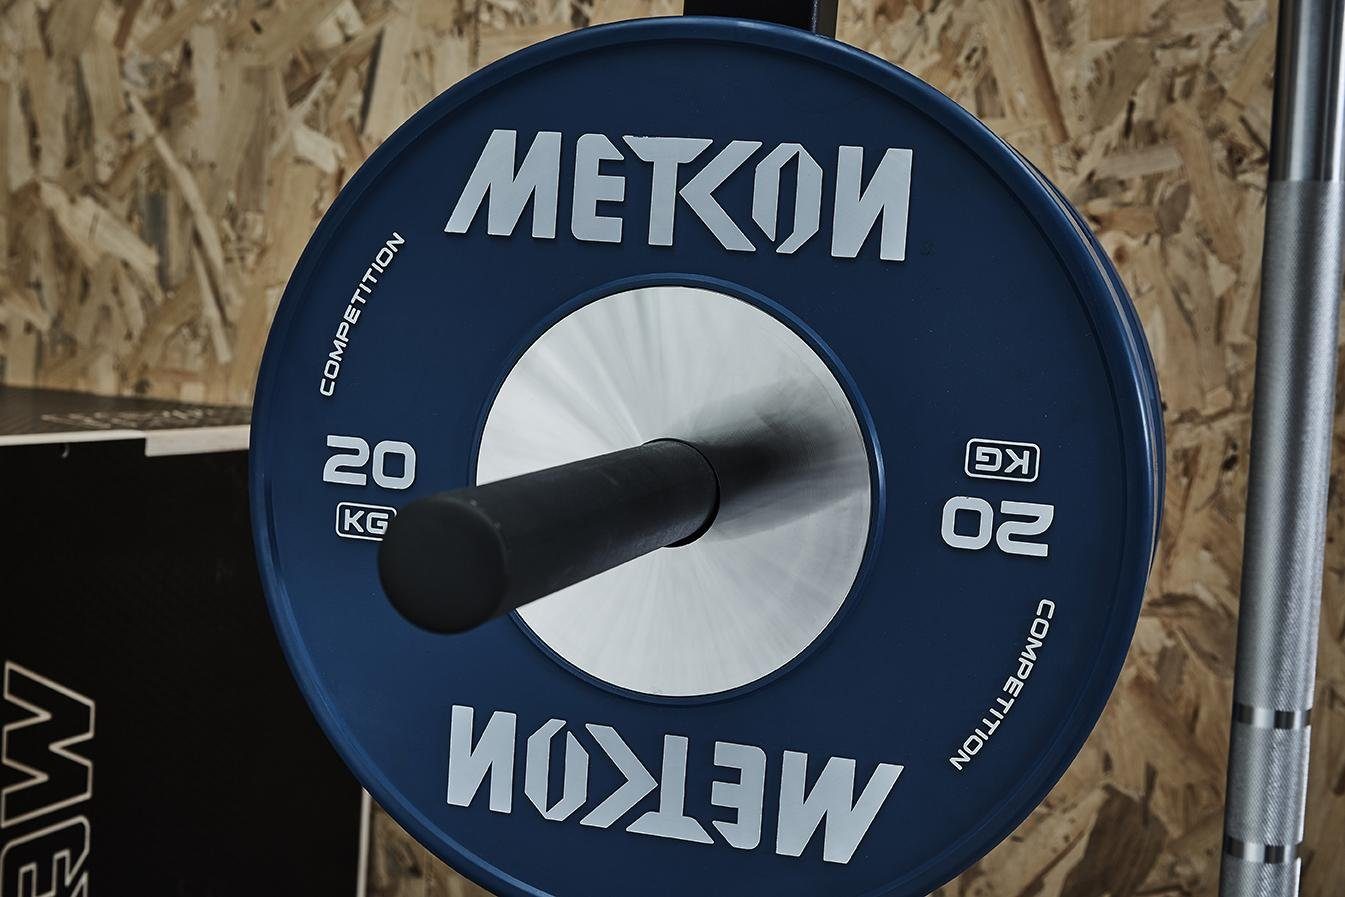 METCON Hantelscheibe kg Competition Plates, Olympische Hantelscheibe 10